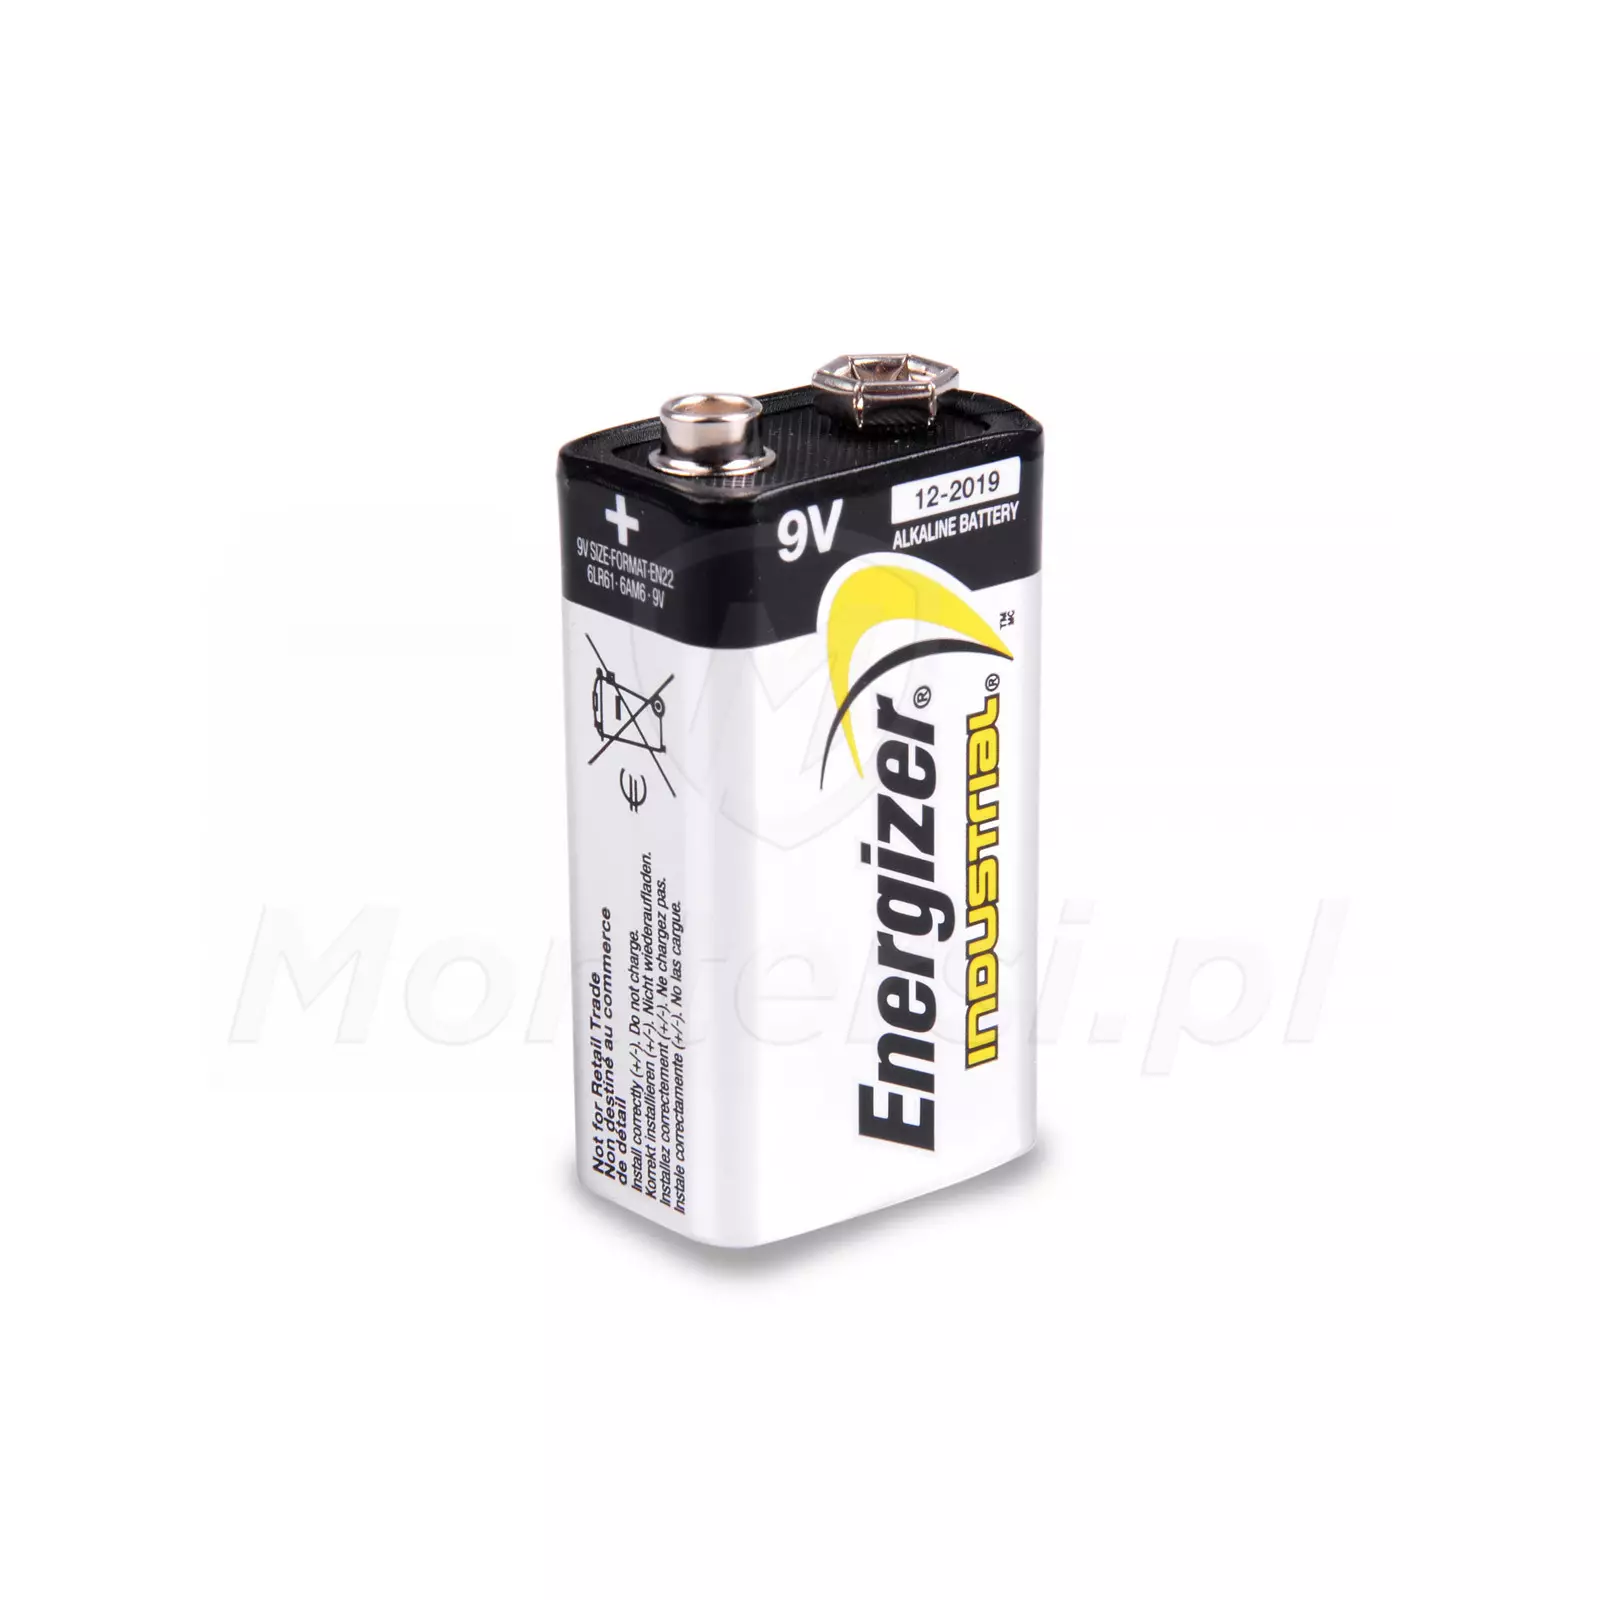 Bateria alkaliczna 6LR61